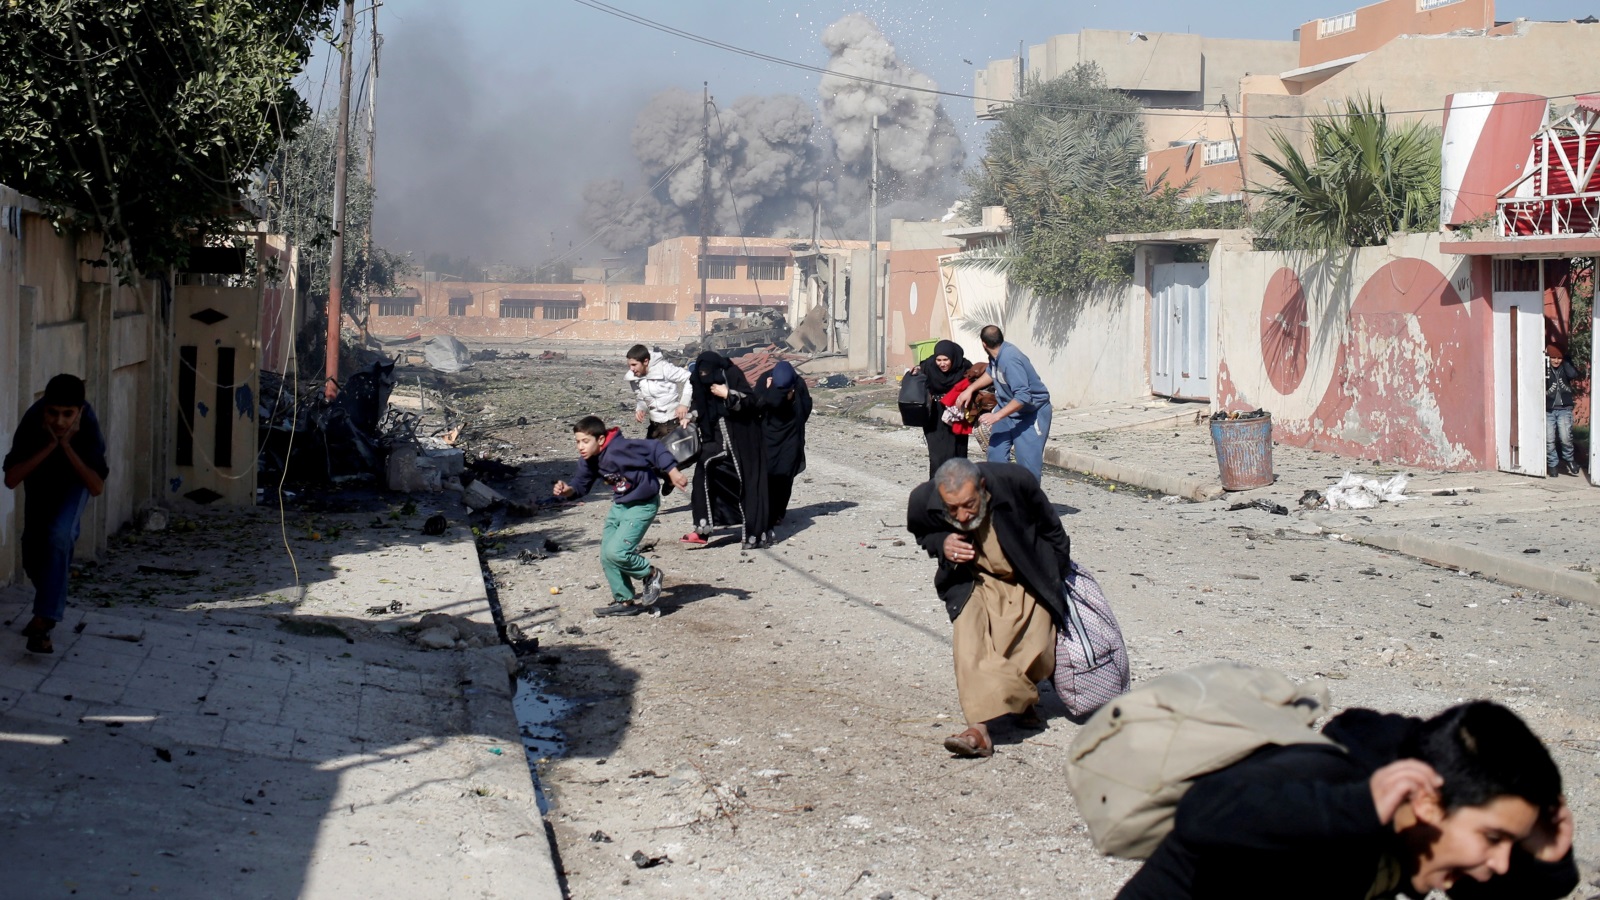 عراقيون في حالة هلع بعد قصف جوي للتحالف على مواقع لتنظيم الدولة في حي التحرير بالموصل أواخر 2016 (رويترز)